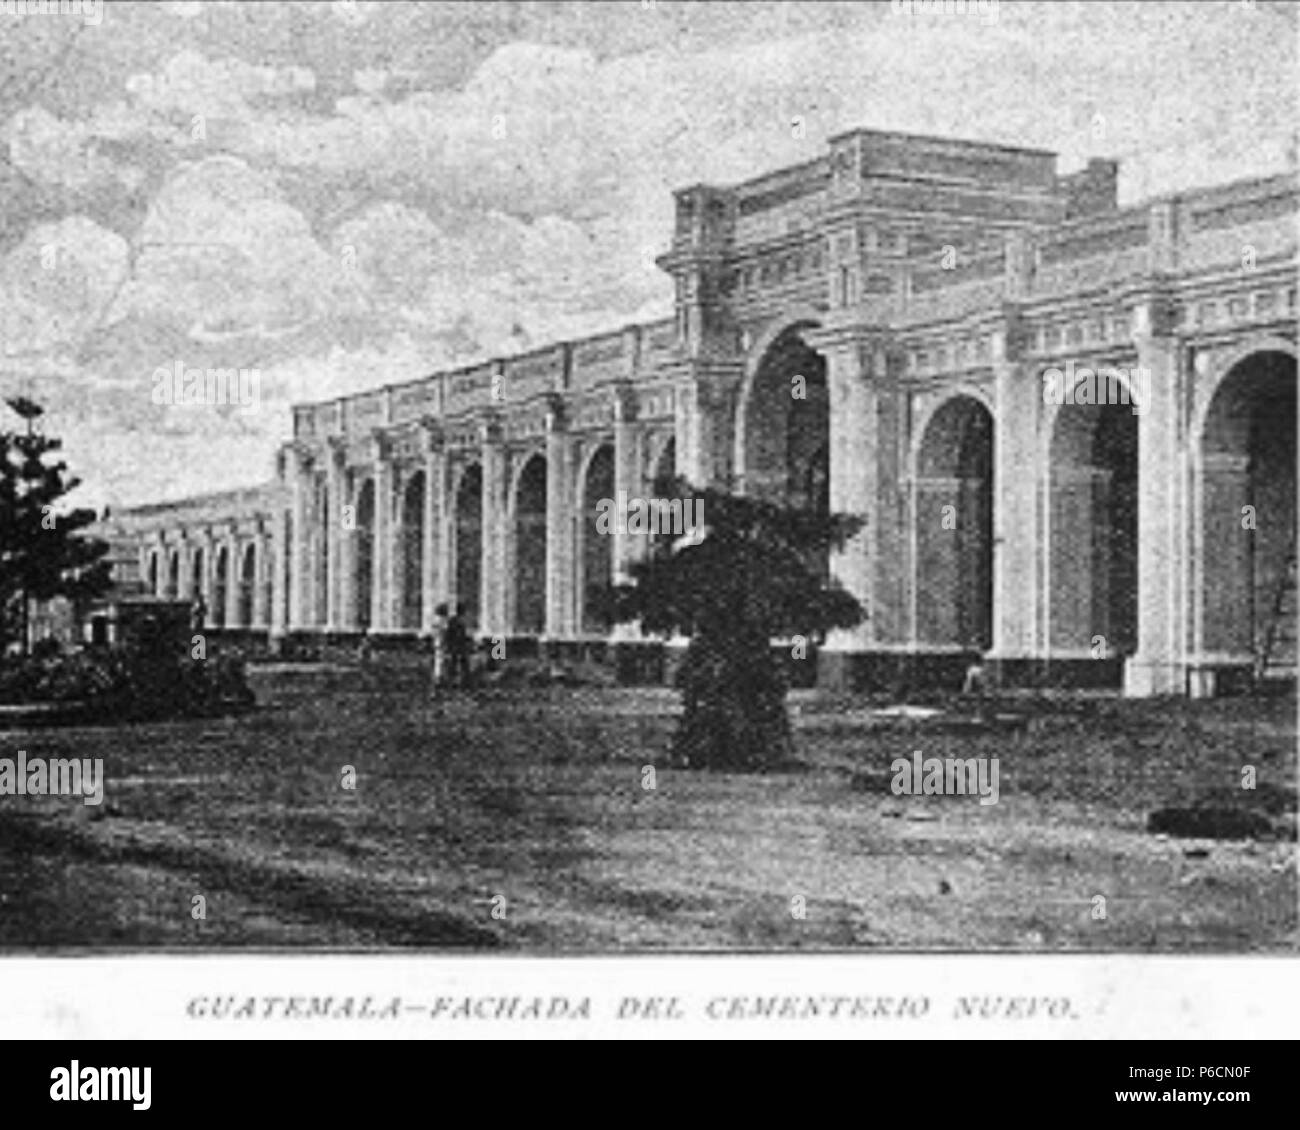 Español: Fachada del Cementerio General de la Ciudad de Guatemala. Revista Ilustrada Guatemala, 1892. 1893 50 GuatemalaIlustrada 1892 04. Stockfoto